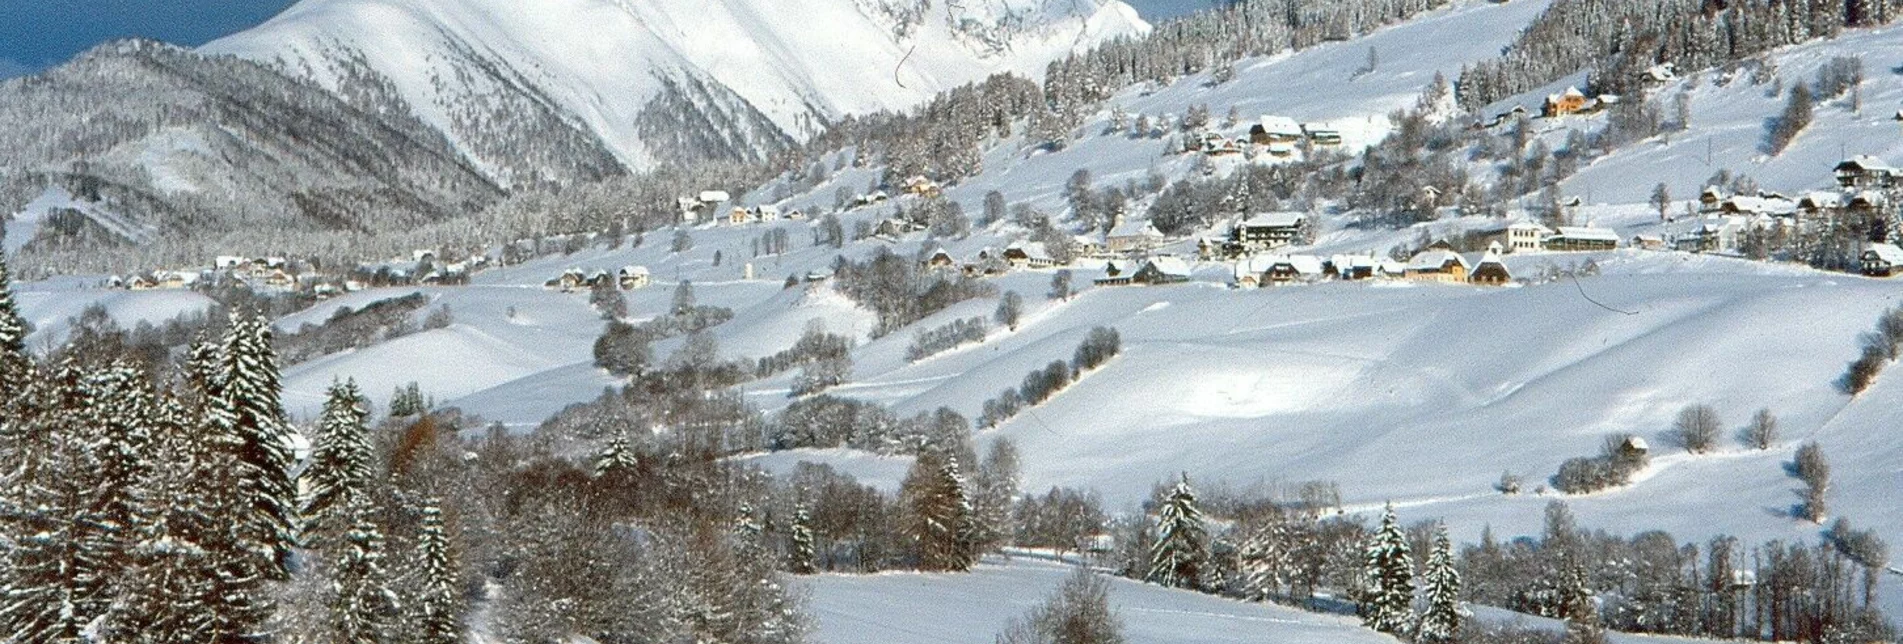 Winterwandern Panoramaweg - Touren-Impression #1 | © Tourismusverband Region Murau